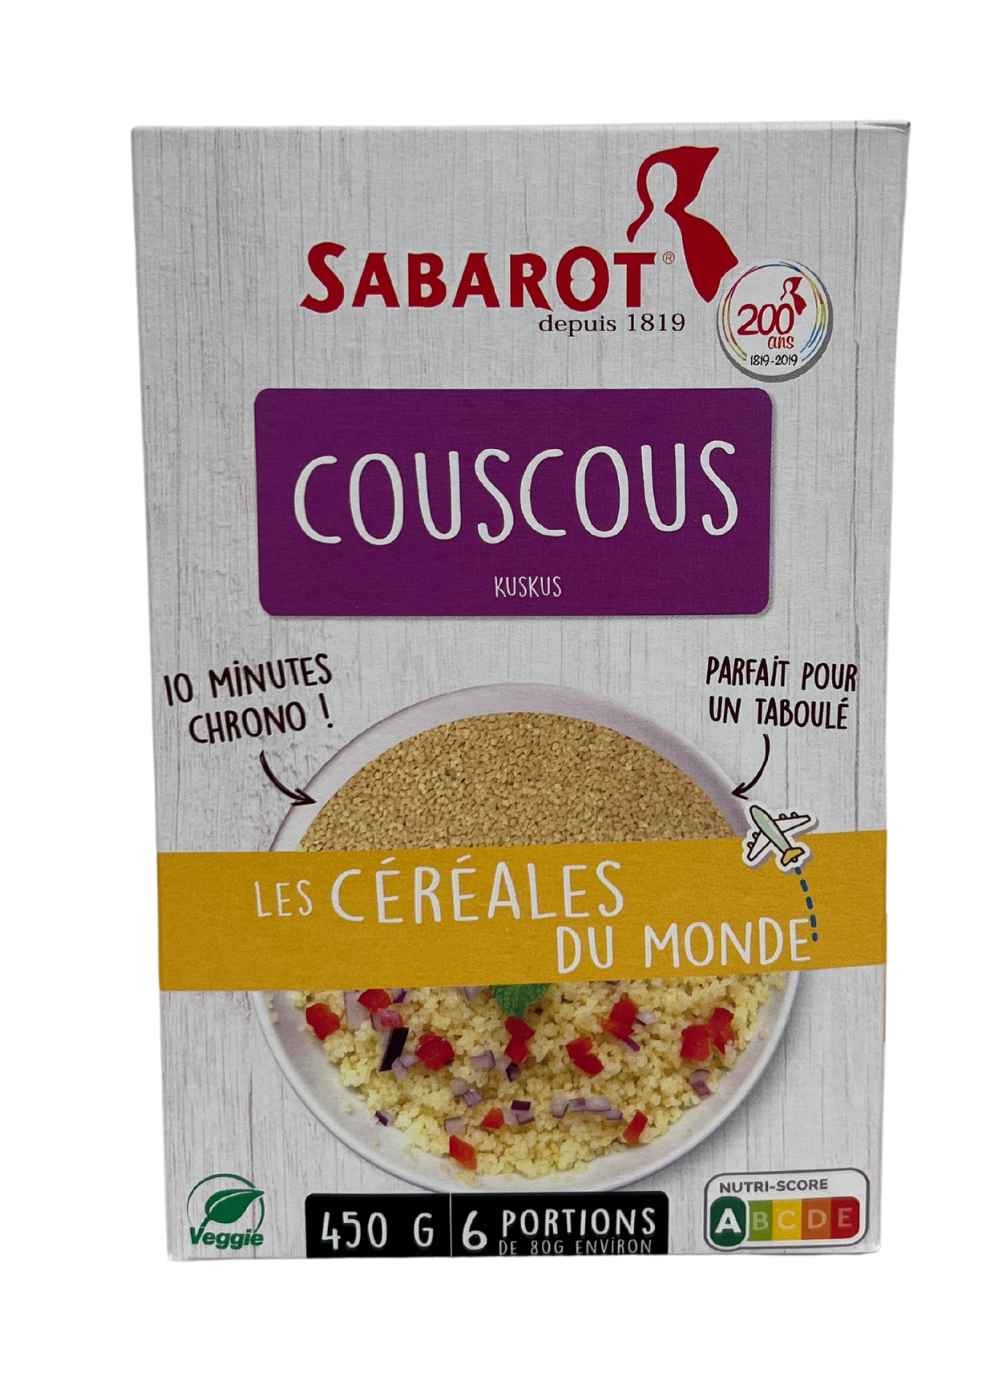 Sabarot Couscous Box 450g